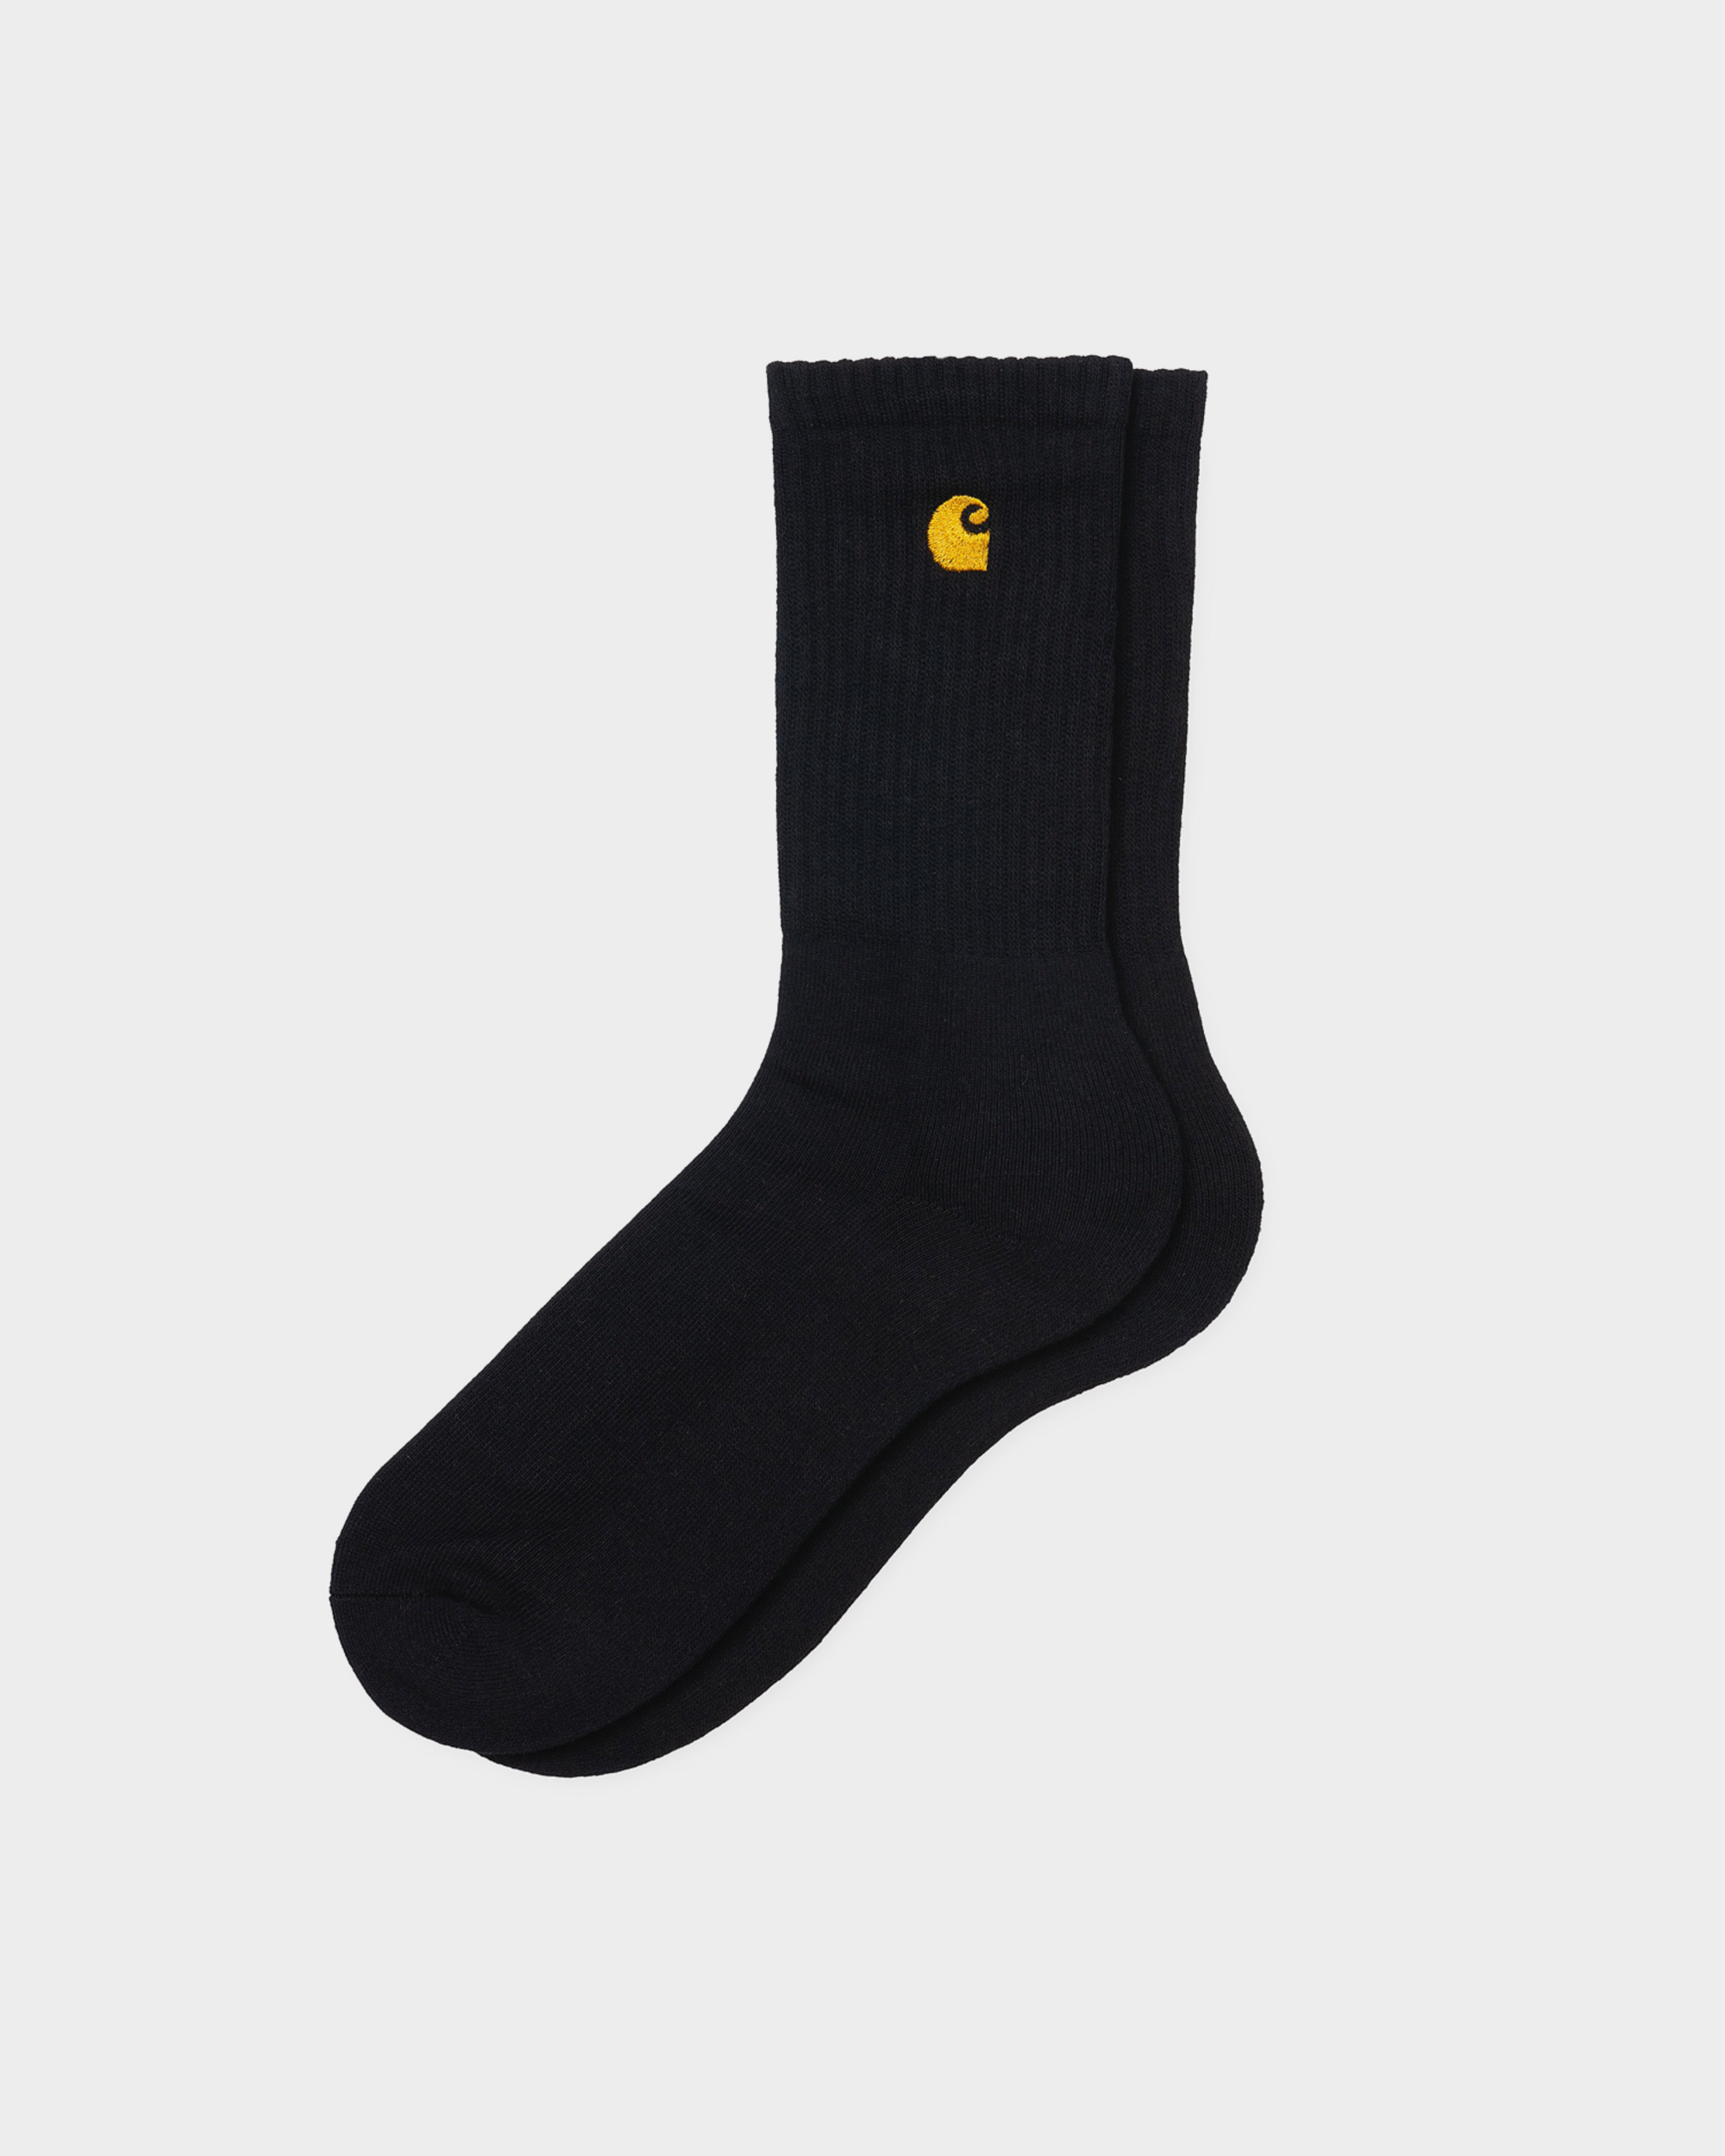 Carhartt Chase Socks Black/Gold